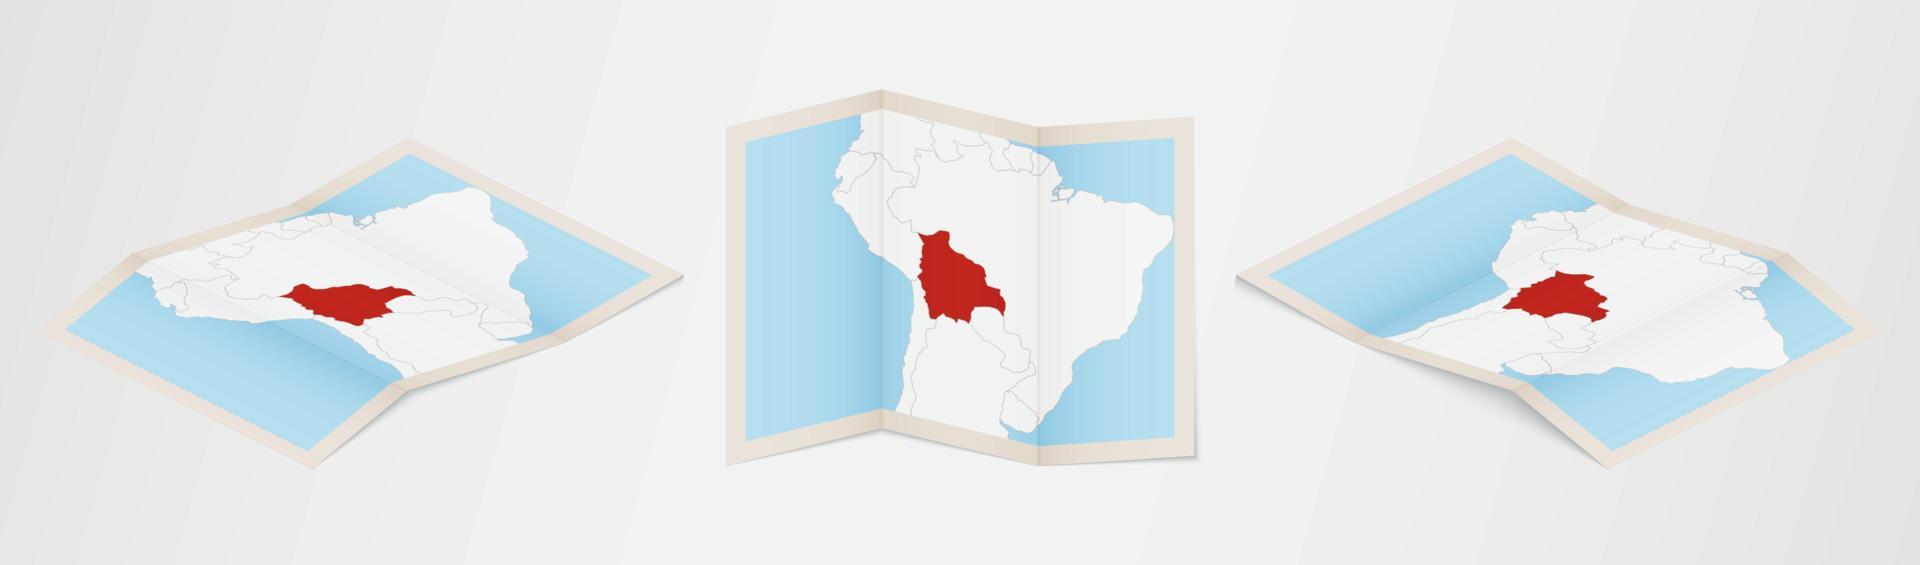 mapa plegado de bolivia en tres versiones diferentes. vector